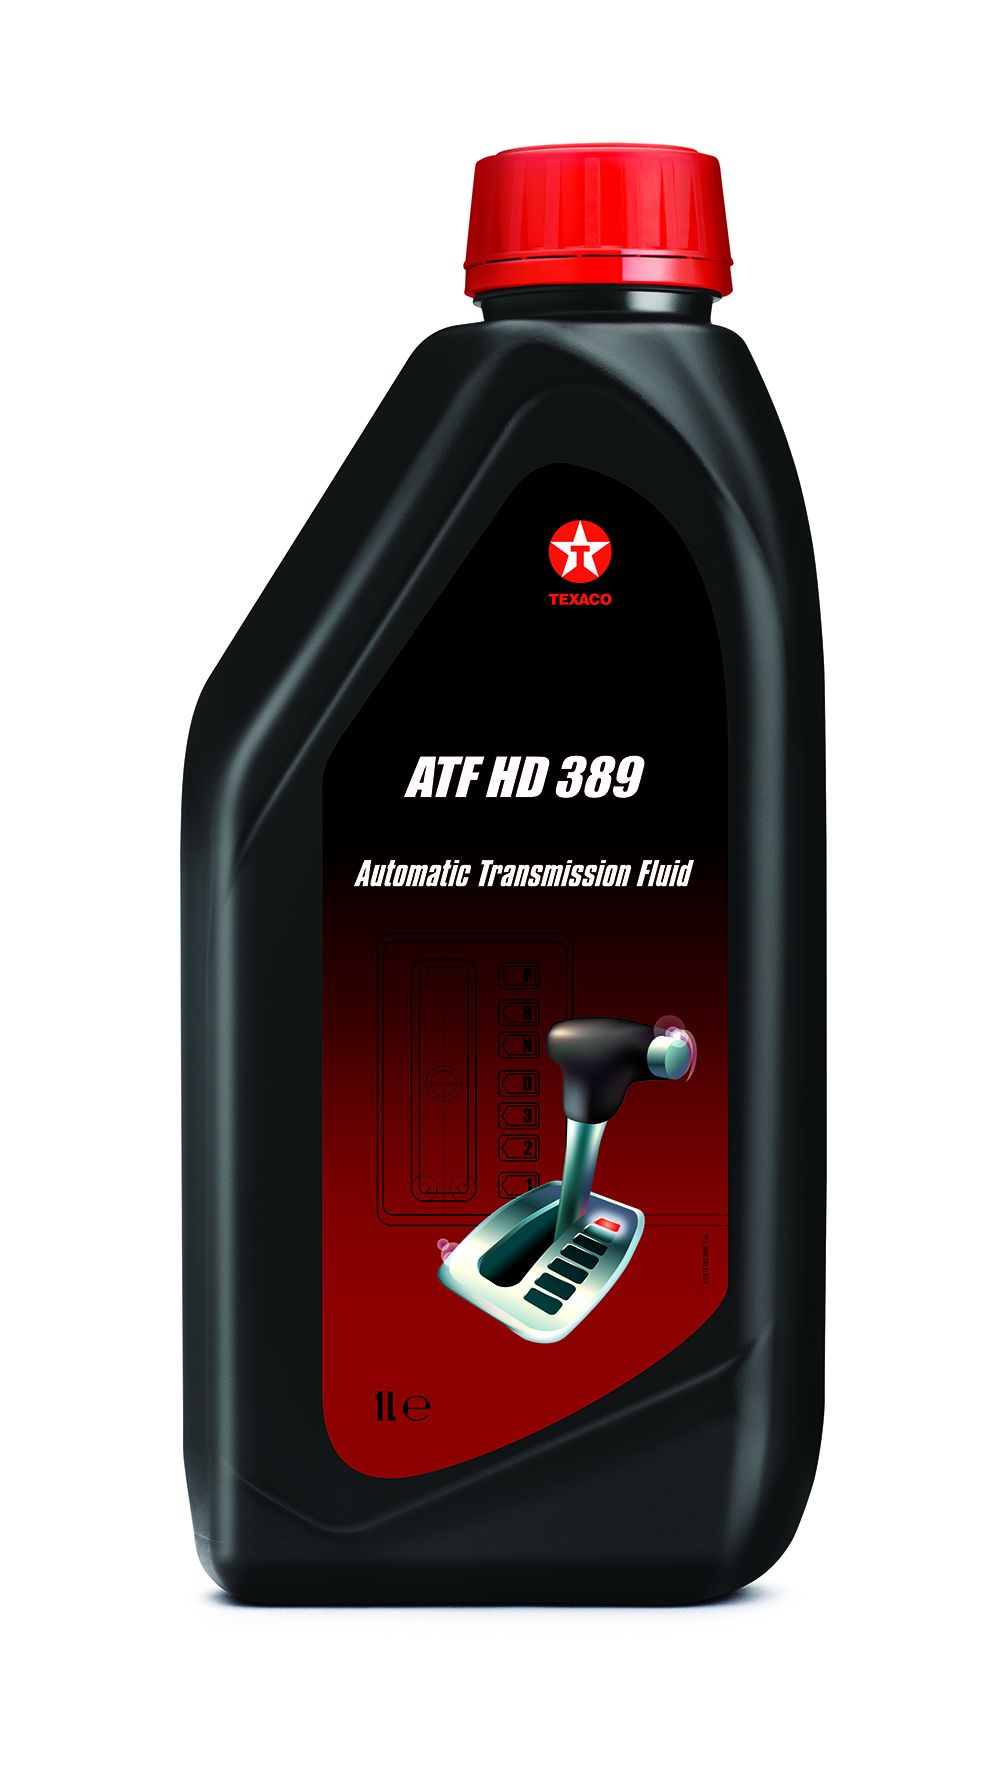 ATF HD 389